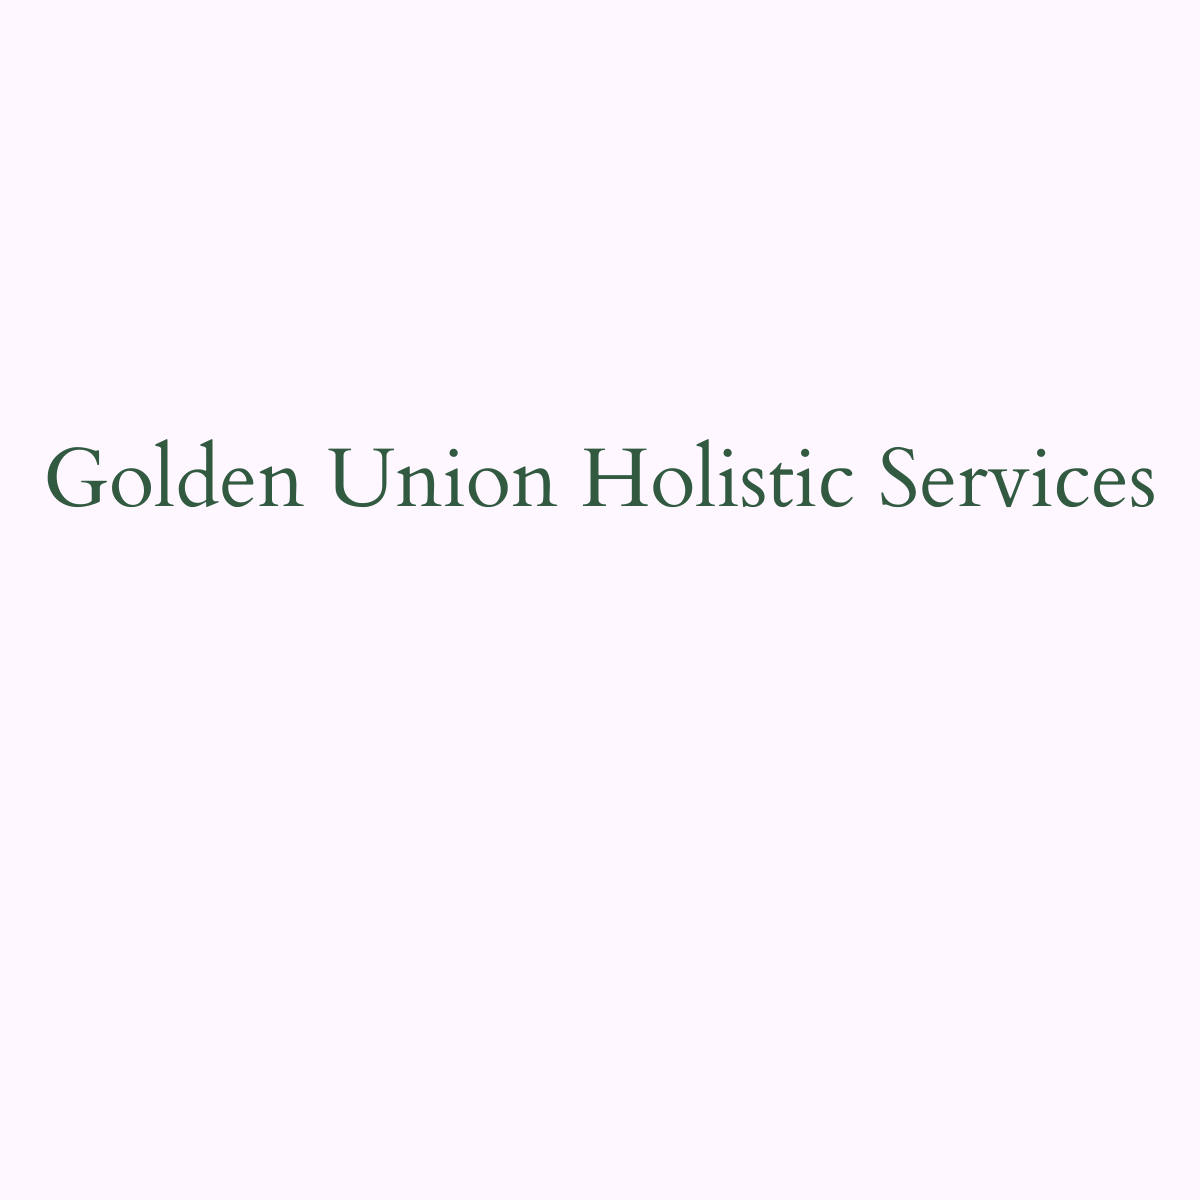 GOLDEN UNION HOLISTIC SERVICES